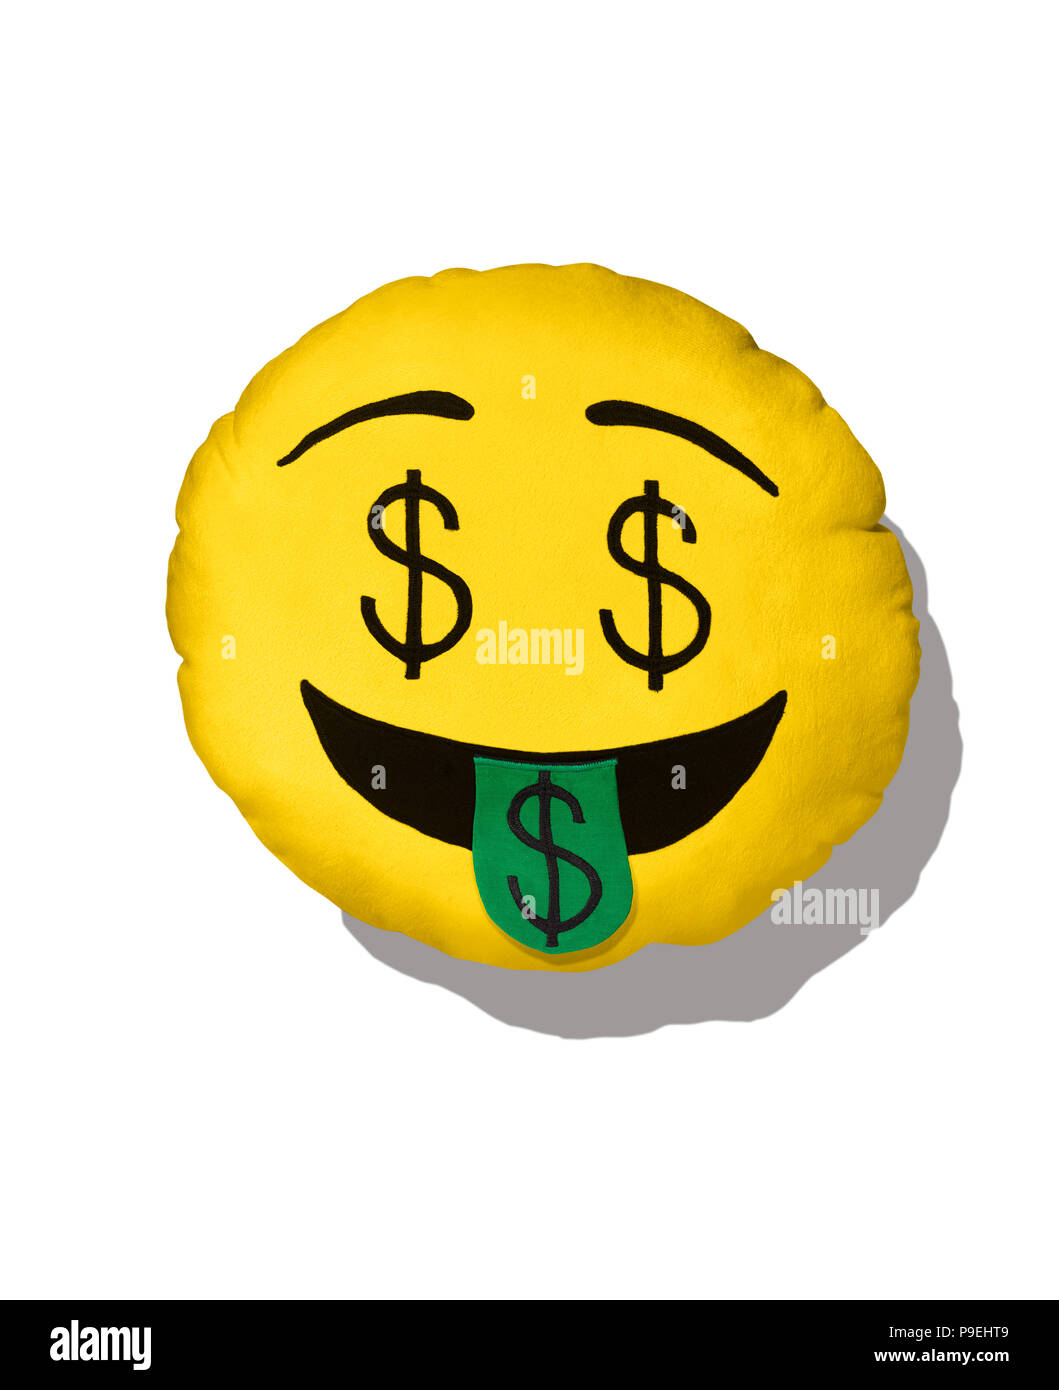 Eine bunte Schuß der Dollarzeichen Emoji Kissen Stockfotografie - Alamy